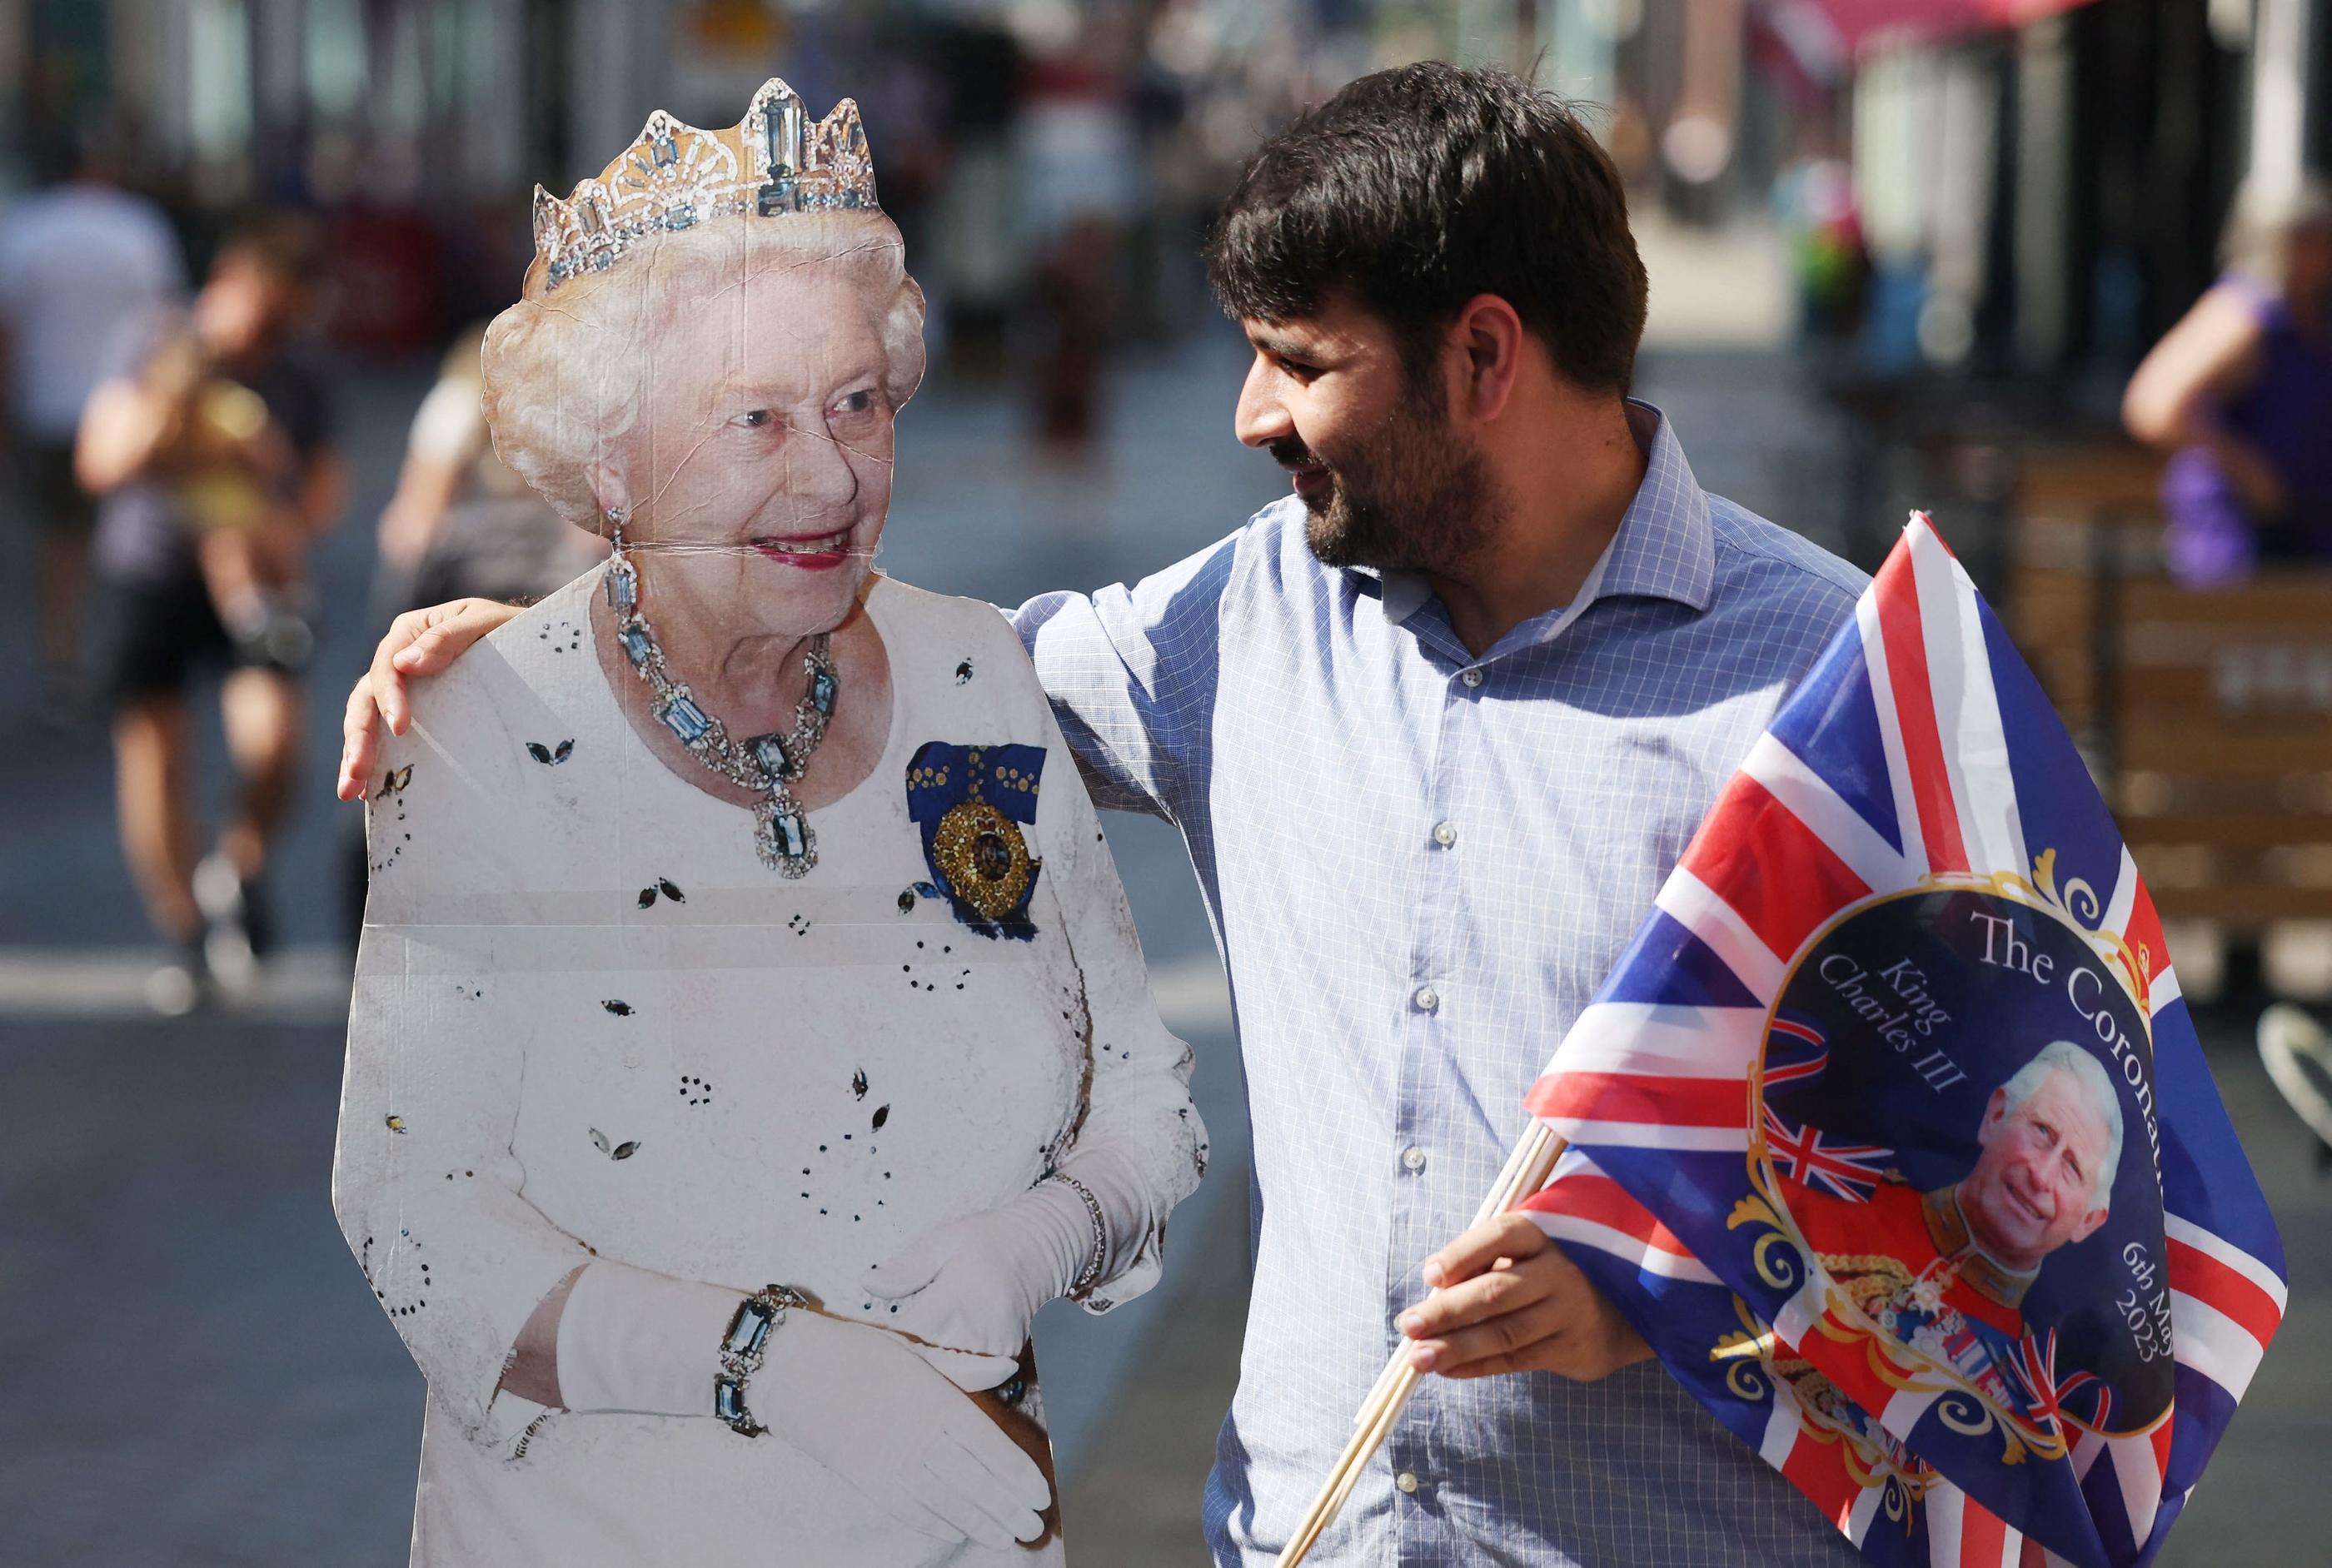 Un homme pose avec une reproduction grandeur nature de la reine Élisabeth II à Windsor, en Grande-Bretagne, le 7 septembre 2023. MAXPPP/EPA/NEIL HALL